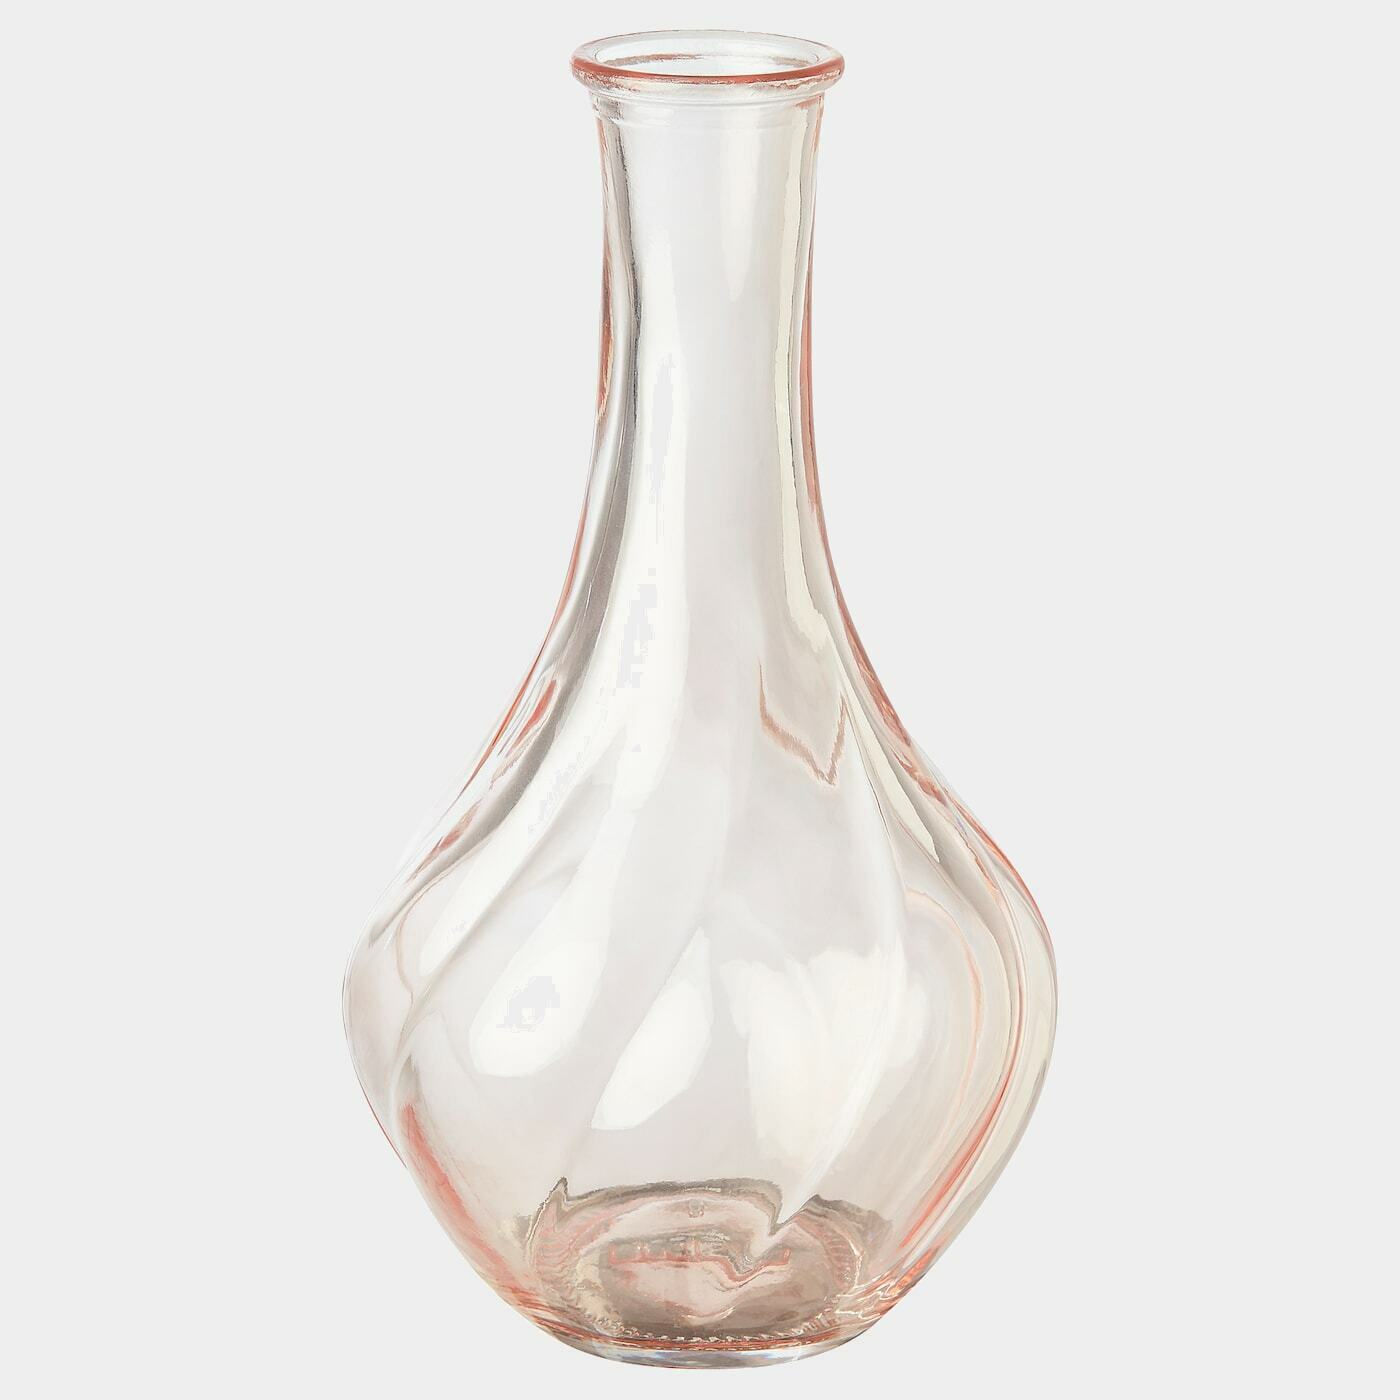 VILJESTARK Vase  -  - Möbel Ideen für dein Zuhause von Home Trends. Möbel Trends von Social Media Influencer für dein Skandi Zuhause.